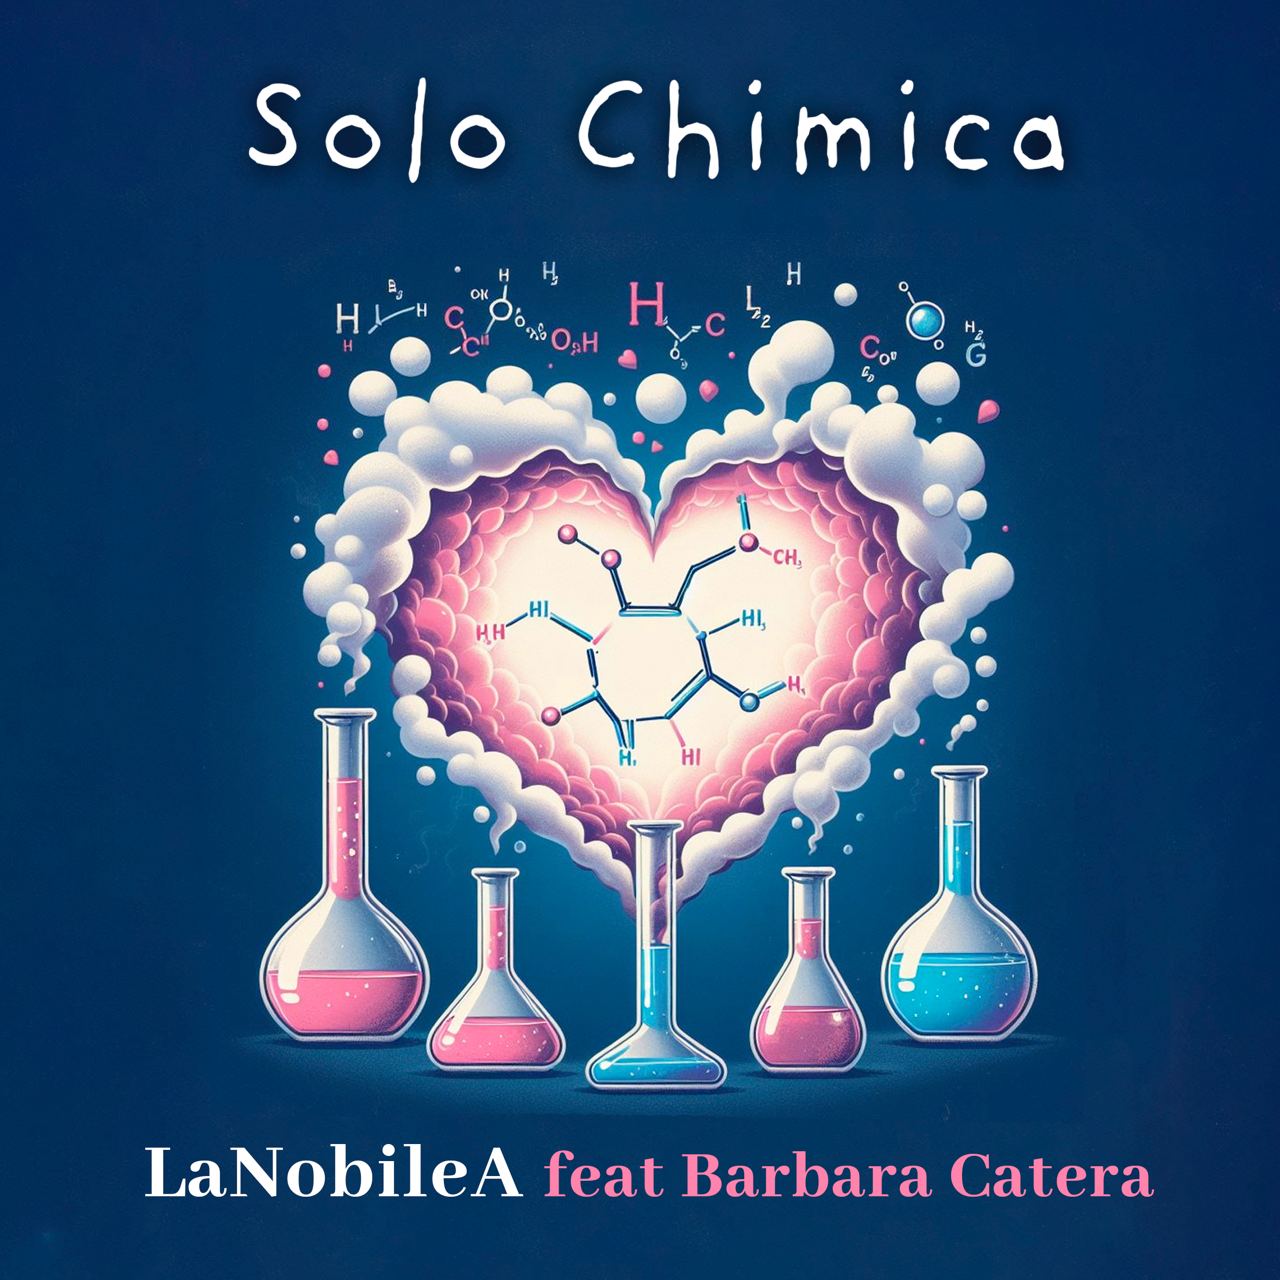 La Nobilea feat Barbara Catera “SOLO CHIMICA”  dal 26 luglio in radio